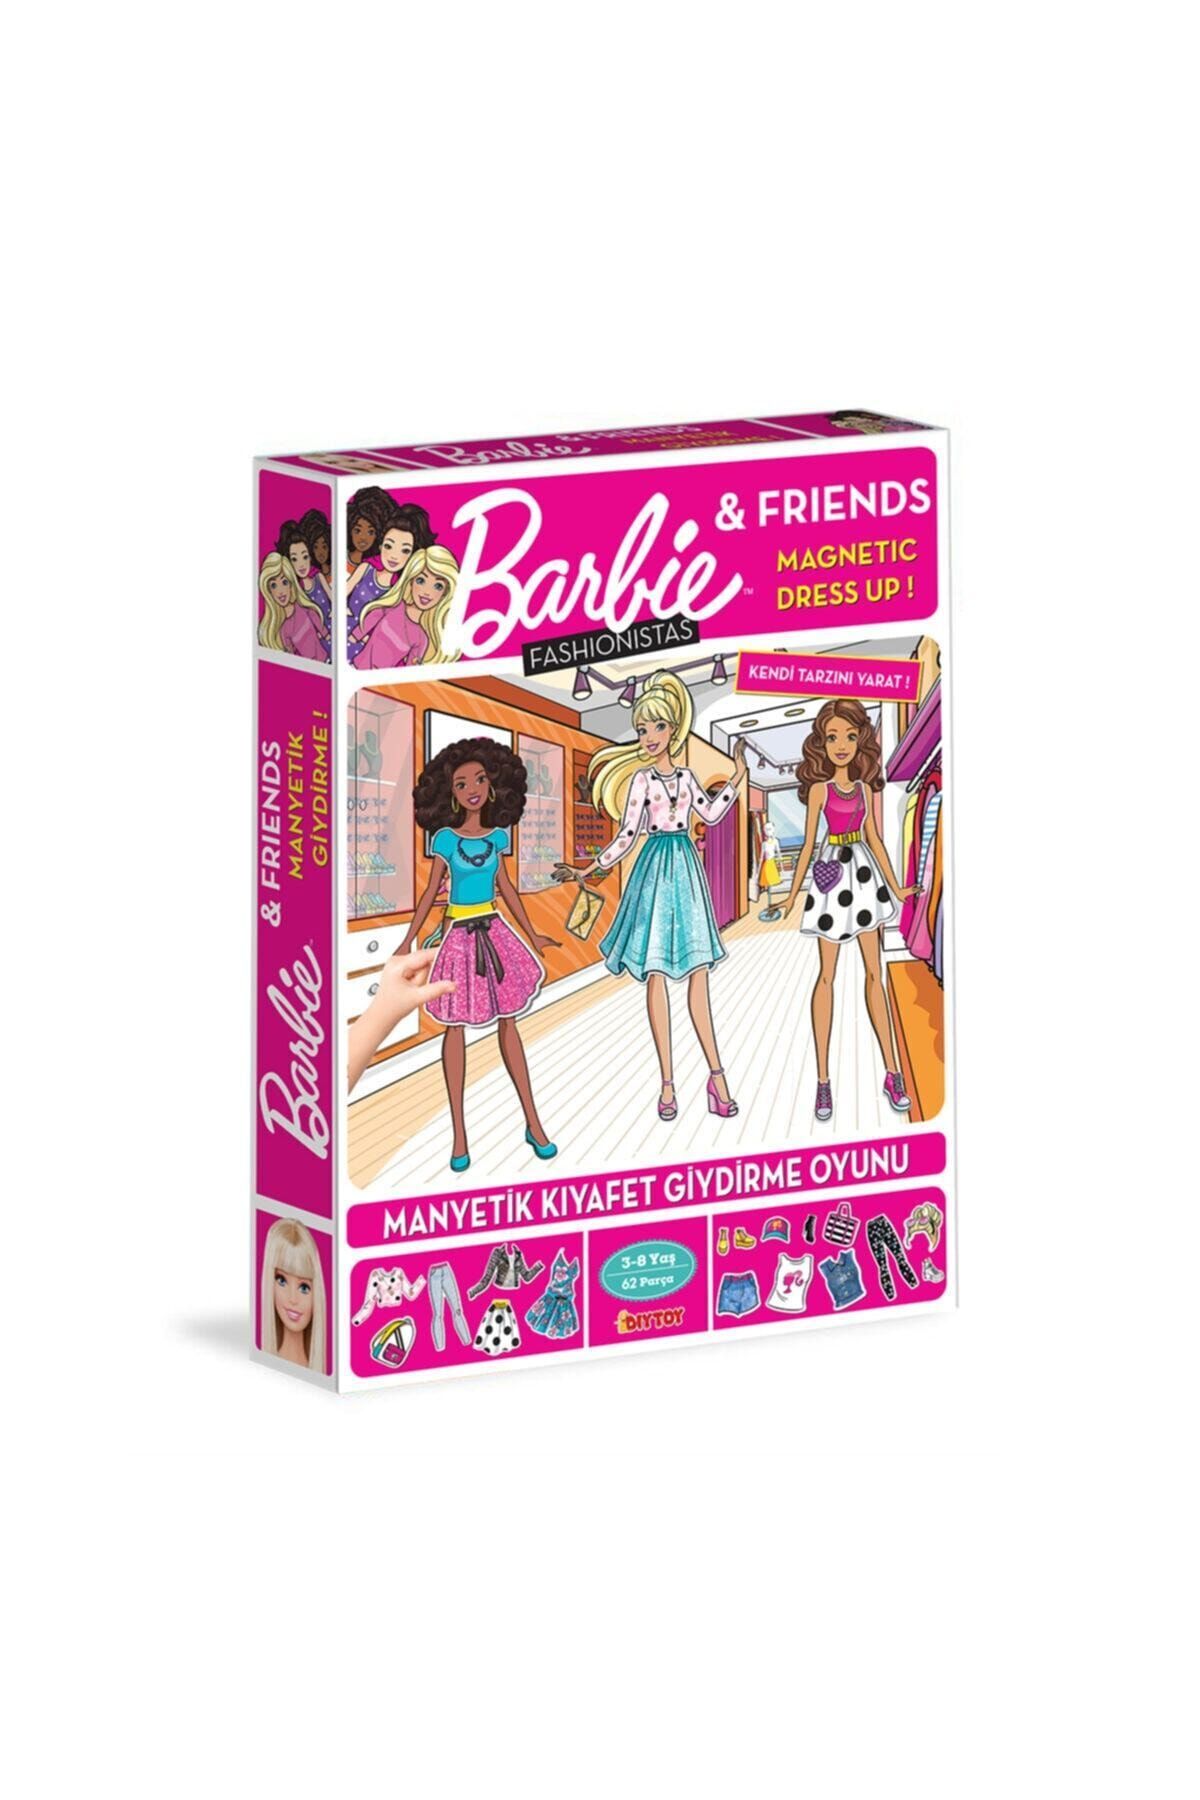 Diytoy Manyetik Barbie Kıyafet Giydirme Oyunu 3 Yaş Ve Üzeri